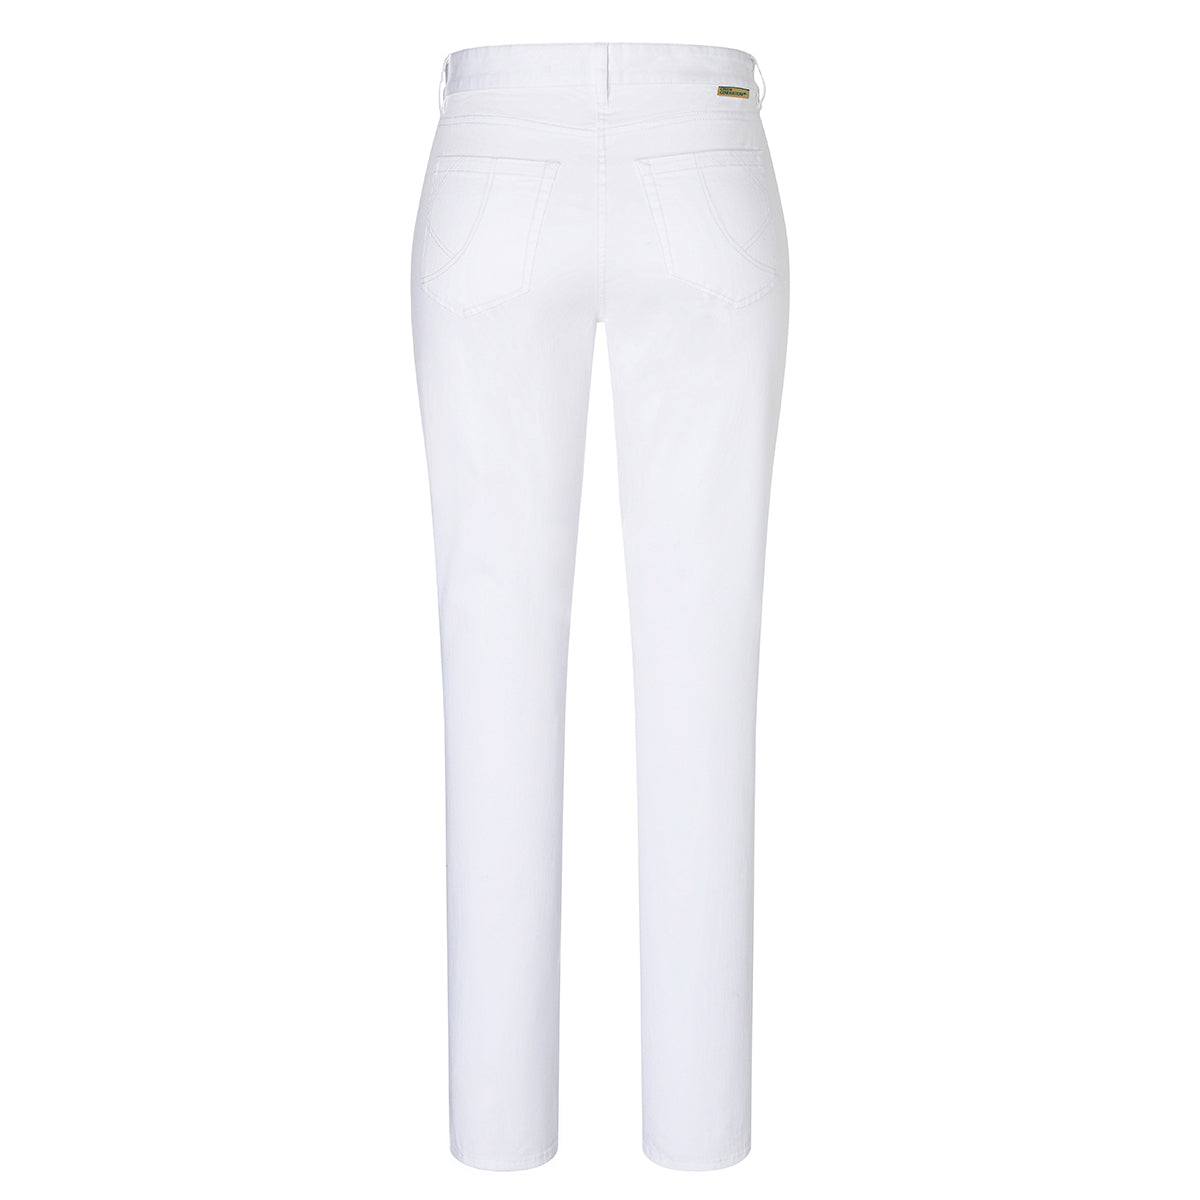 Karlowsky - 5-lomme bukser til damer - Hvid - Størrelse: 48